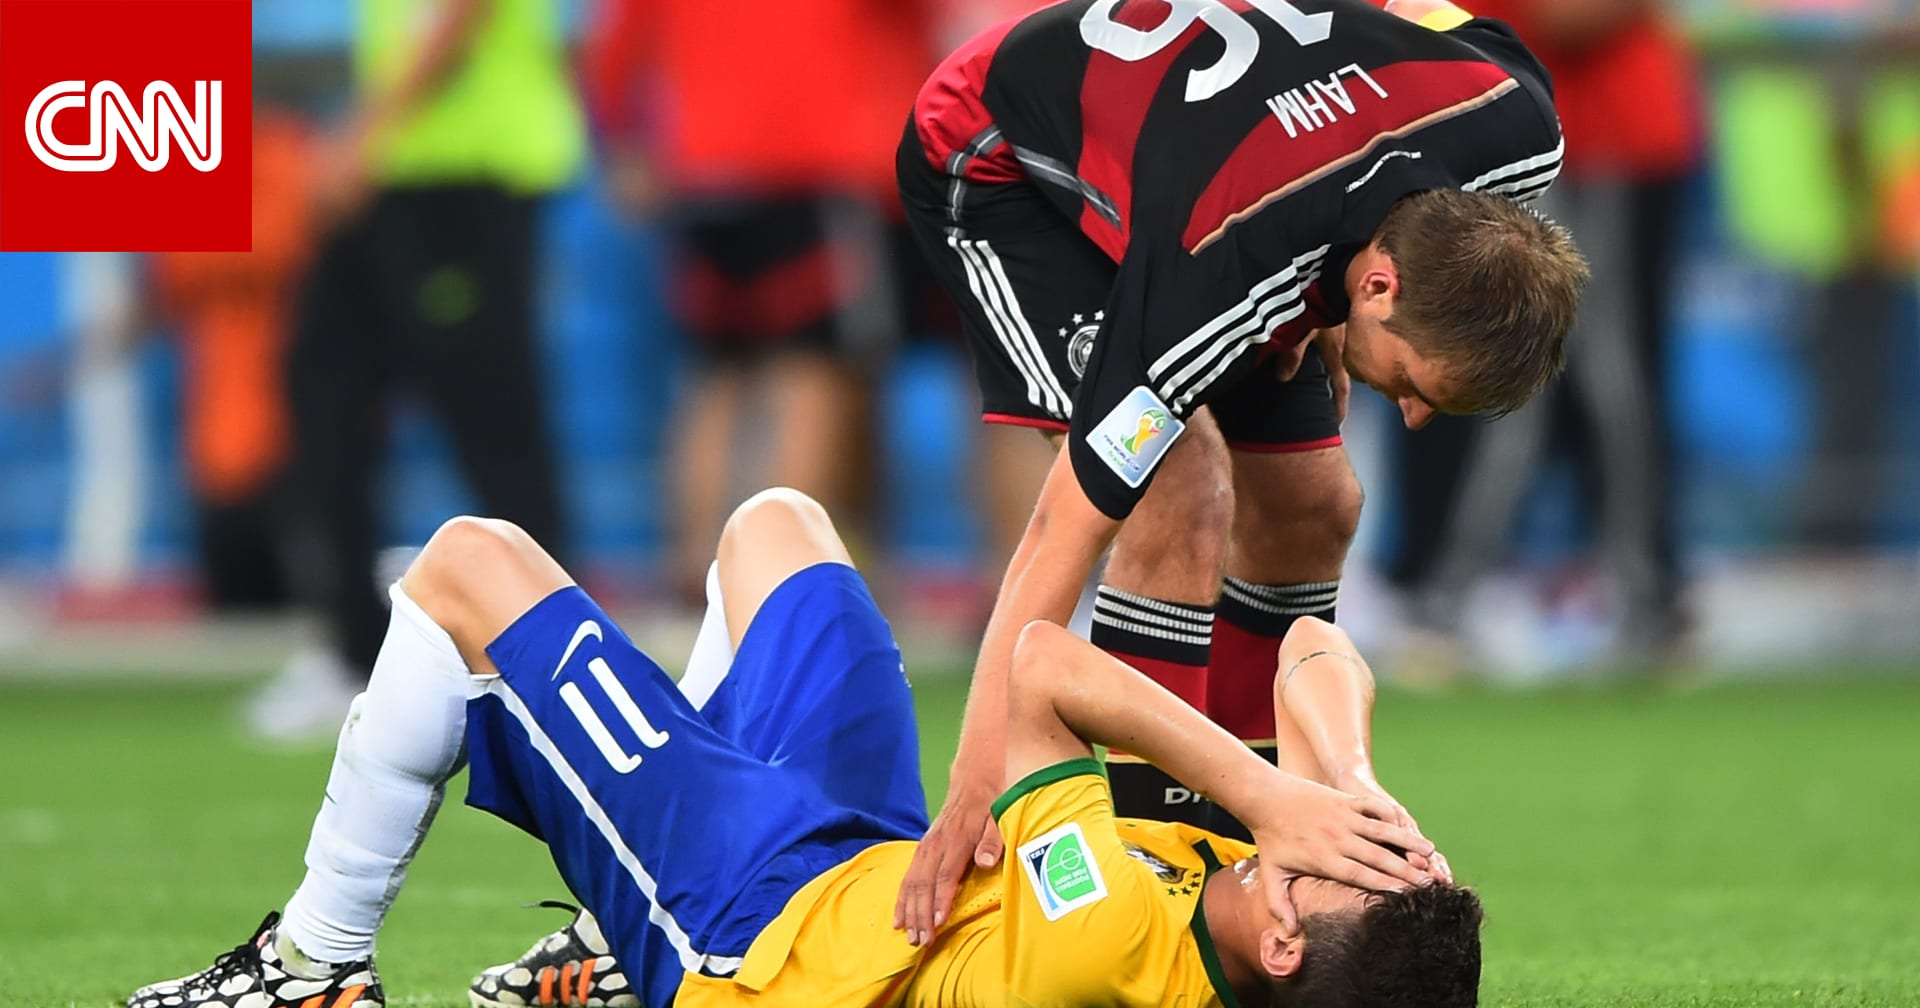 Германия 1 июля. Матч Бразилия Германия 2014. Бразилия Германия 1-7. Восьмерка футбольная. Германия Бразилия 7 1 приколы.